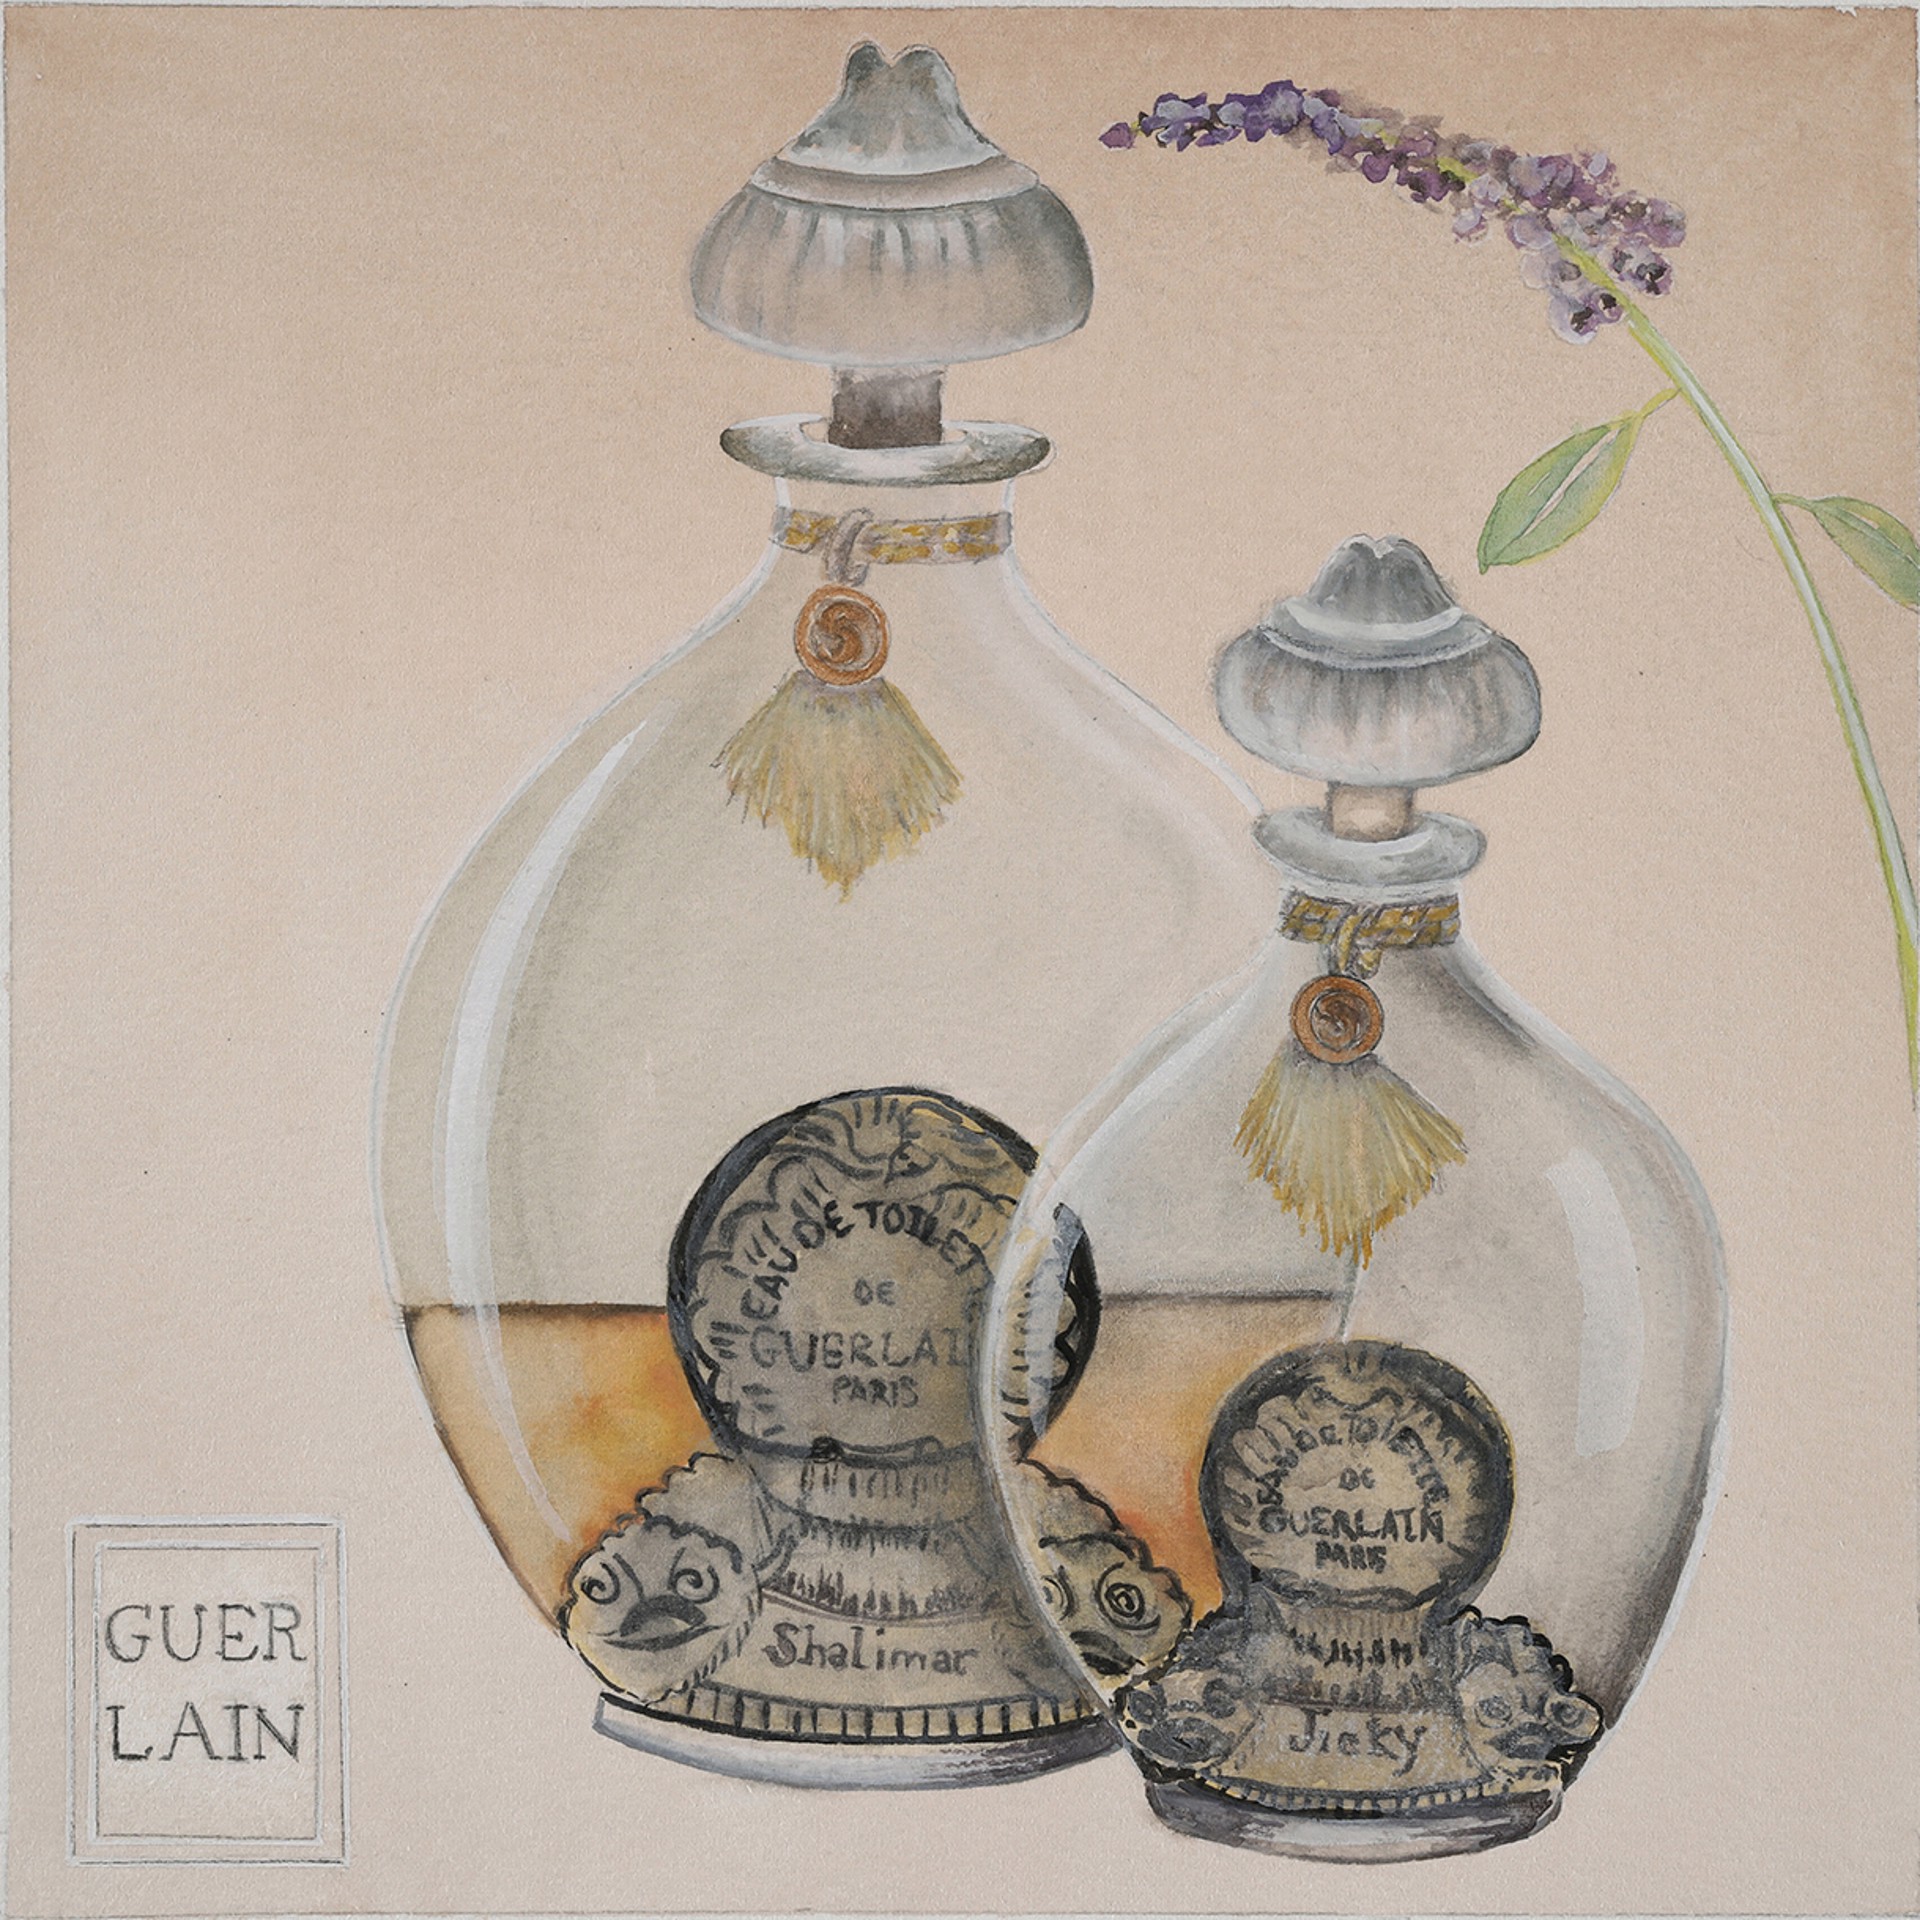 Memorable Guerlain by Adrienne Sherman